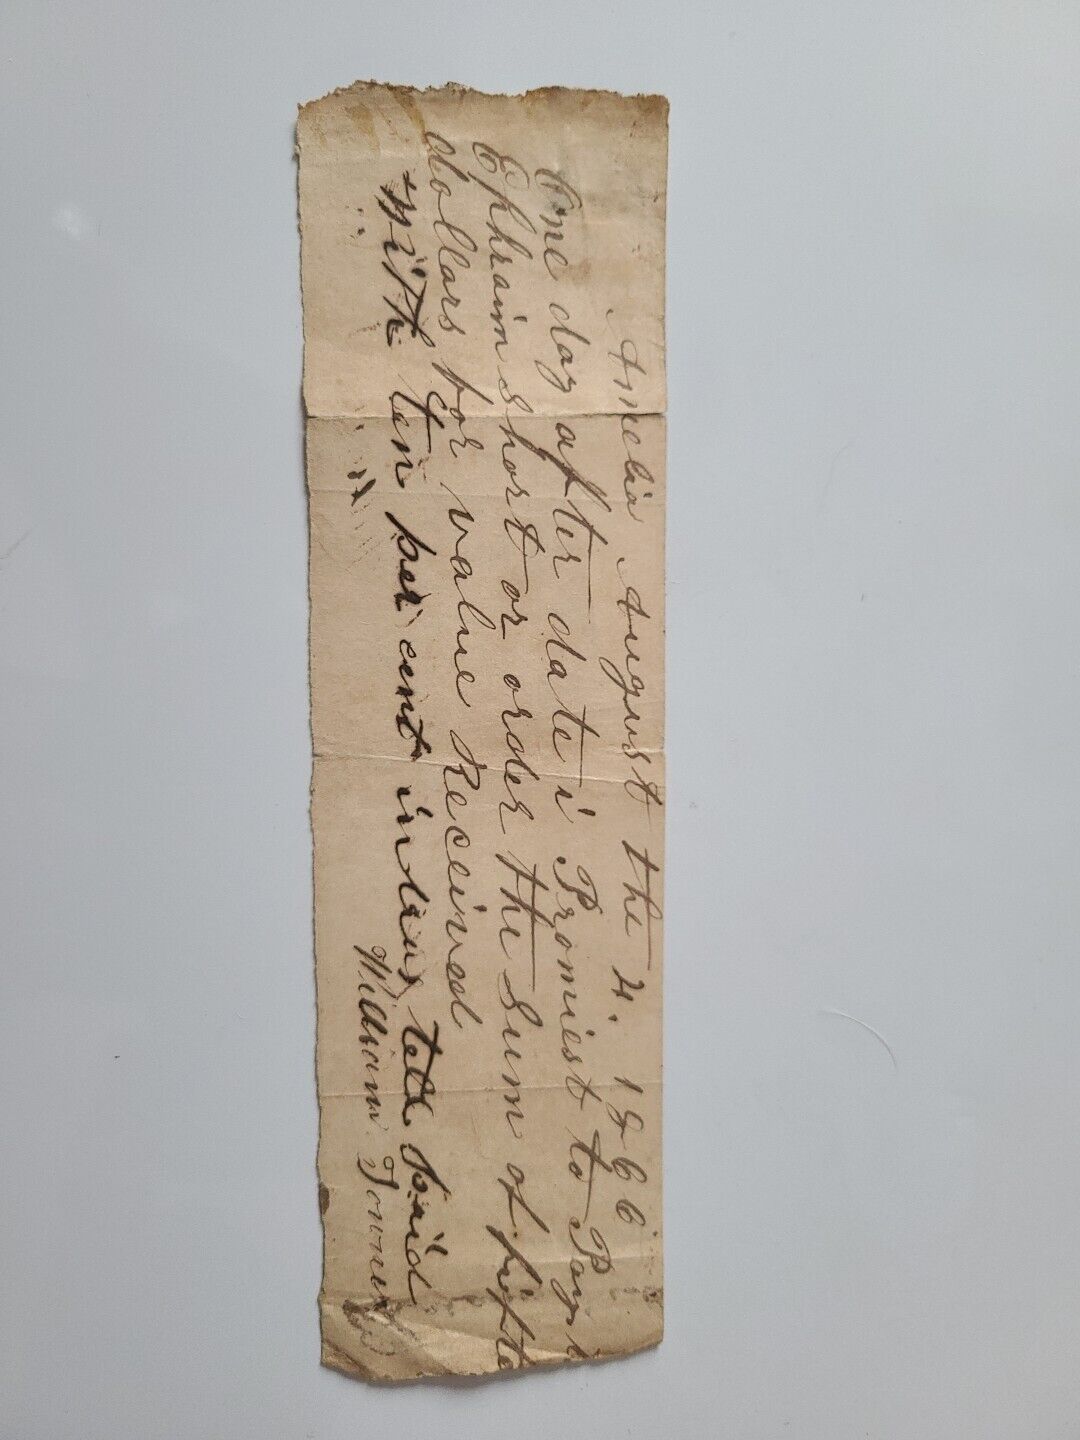 1866 Hand-written Promissory Note